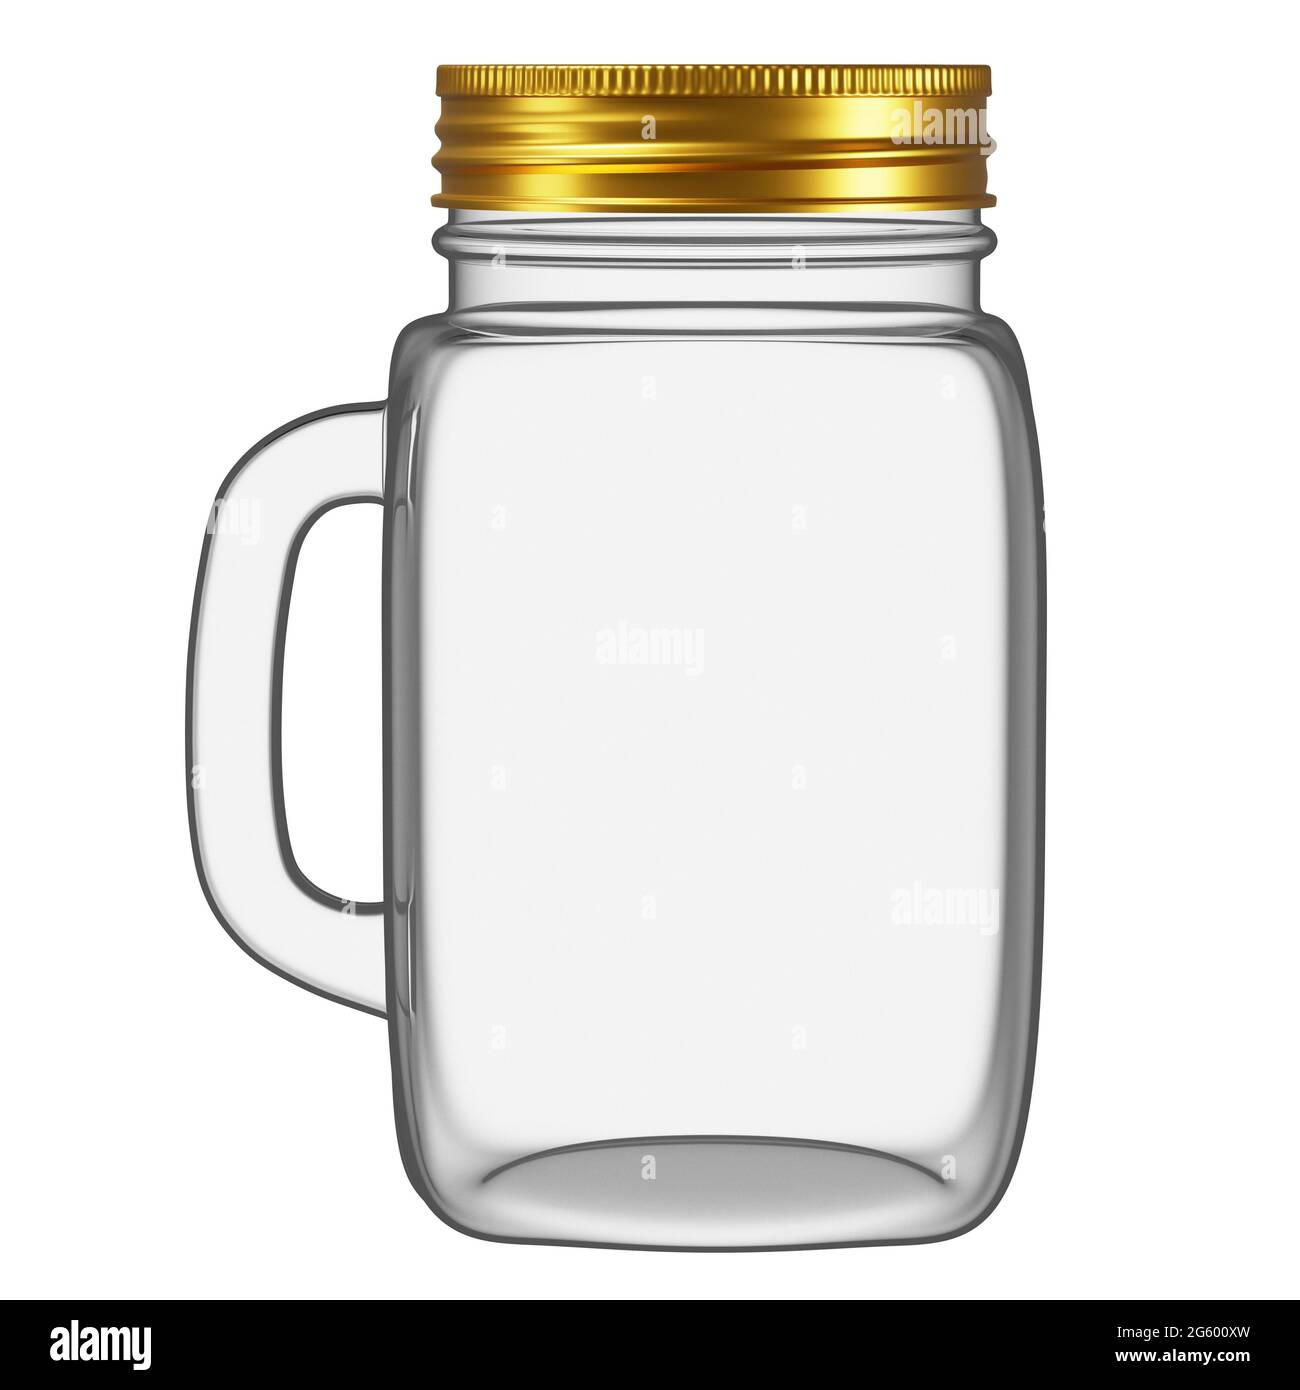 Realistischer quadratischer Glasbecher, Glas, Flasche mit goldenem Deckel  und weißem Hintergrund. Spender für Wasser, Saft, Mix und andere Getränke  Stockfotografie - Alamy